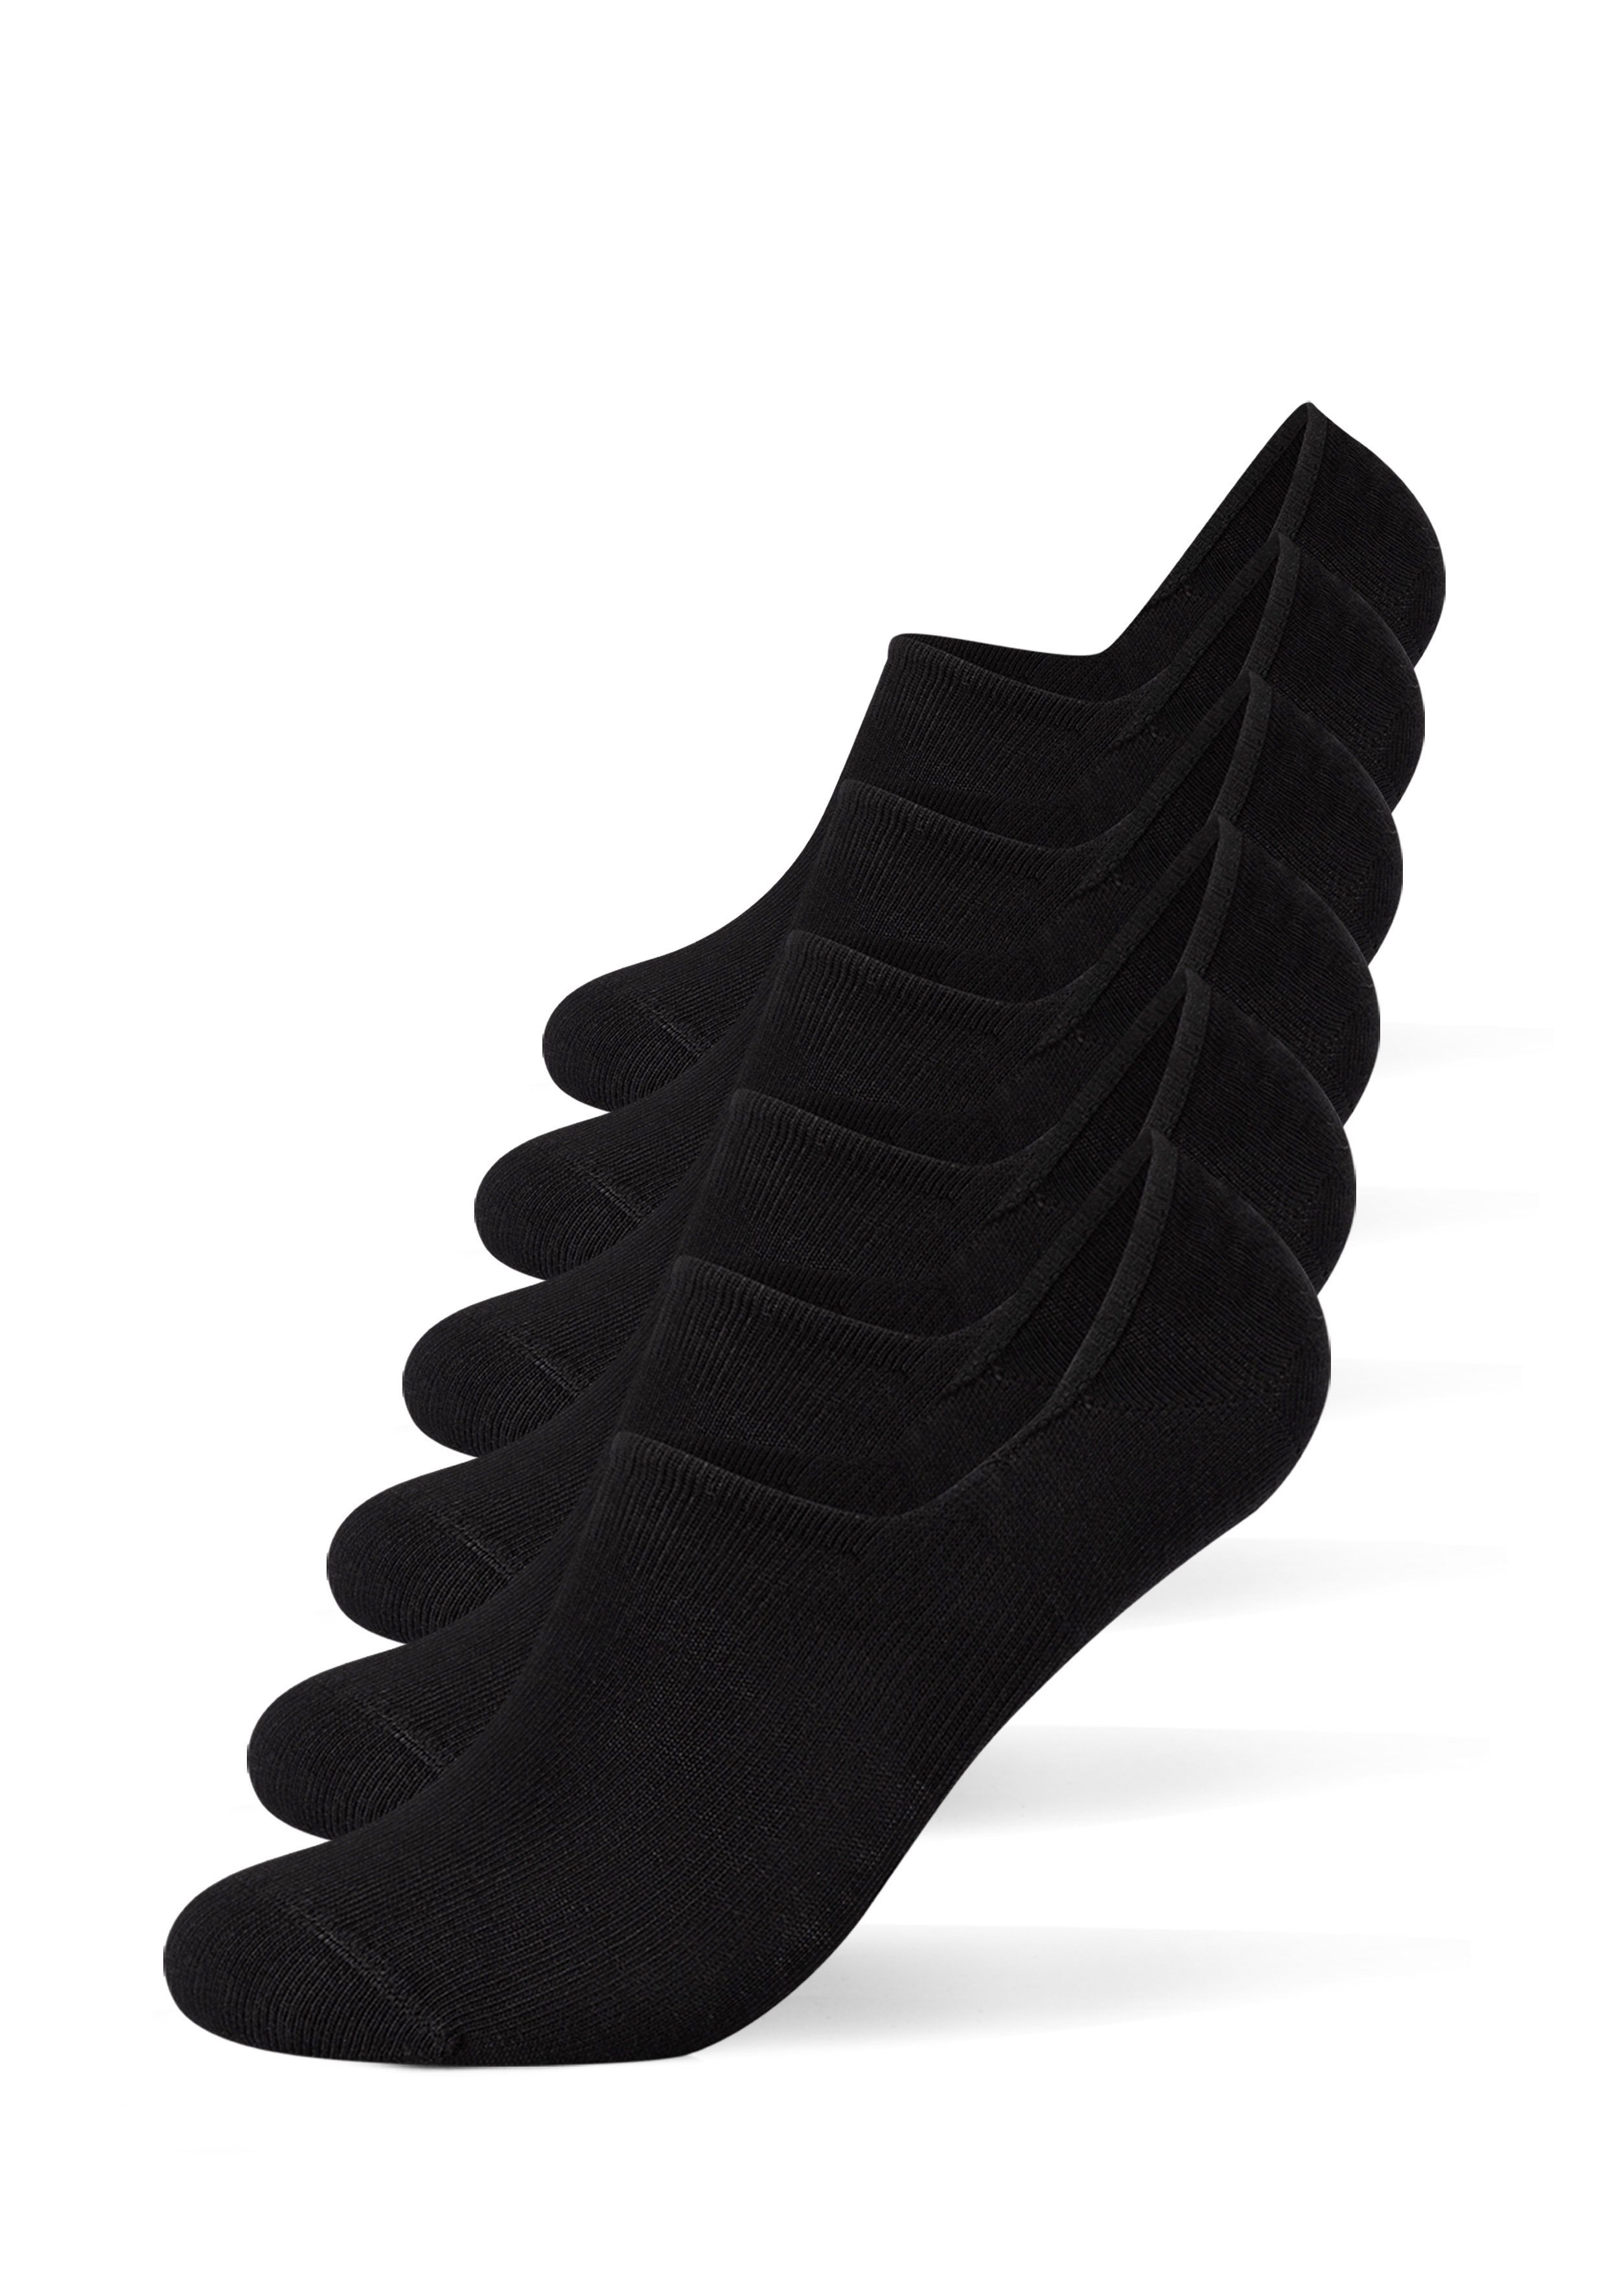 Camano Socken unsichtbare Sneaker Socken (6-Paar) in bequemen Design schwarz